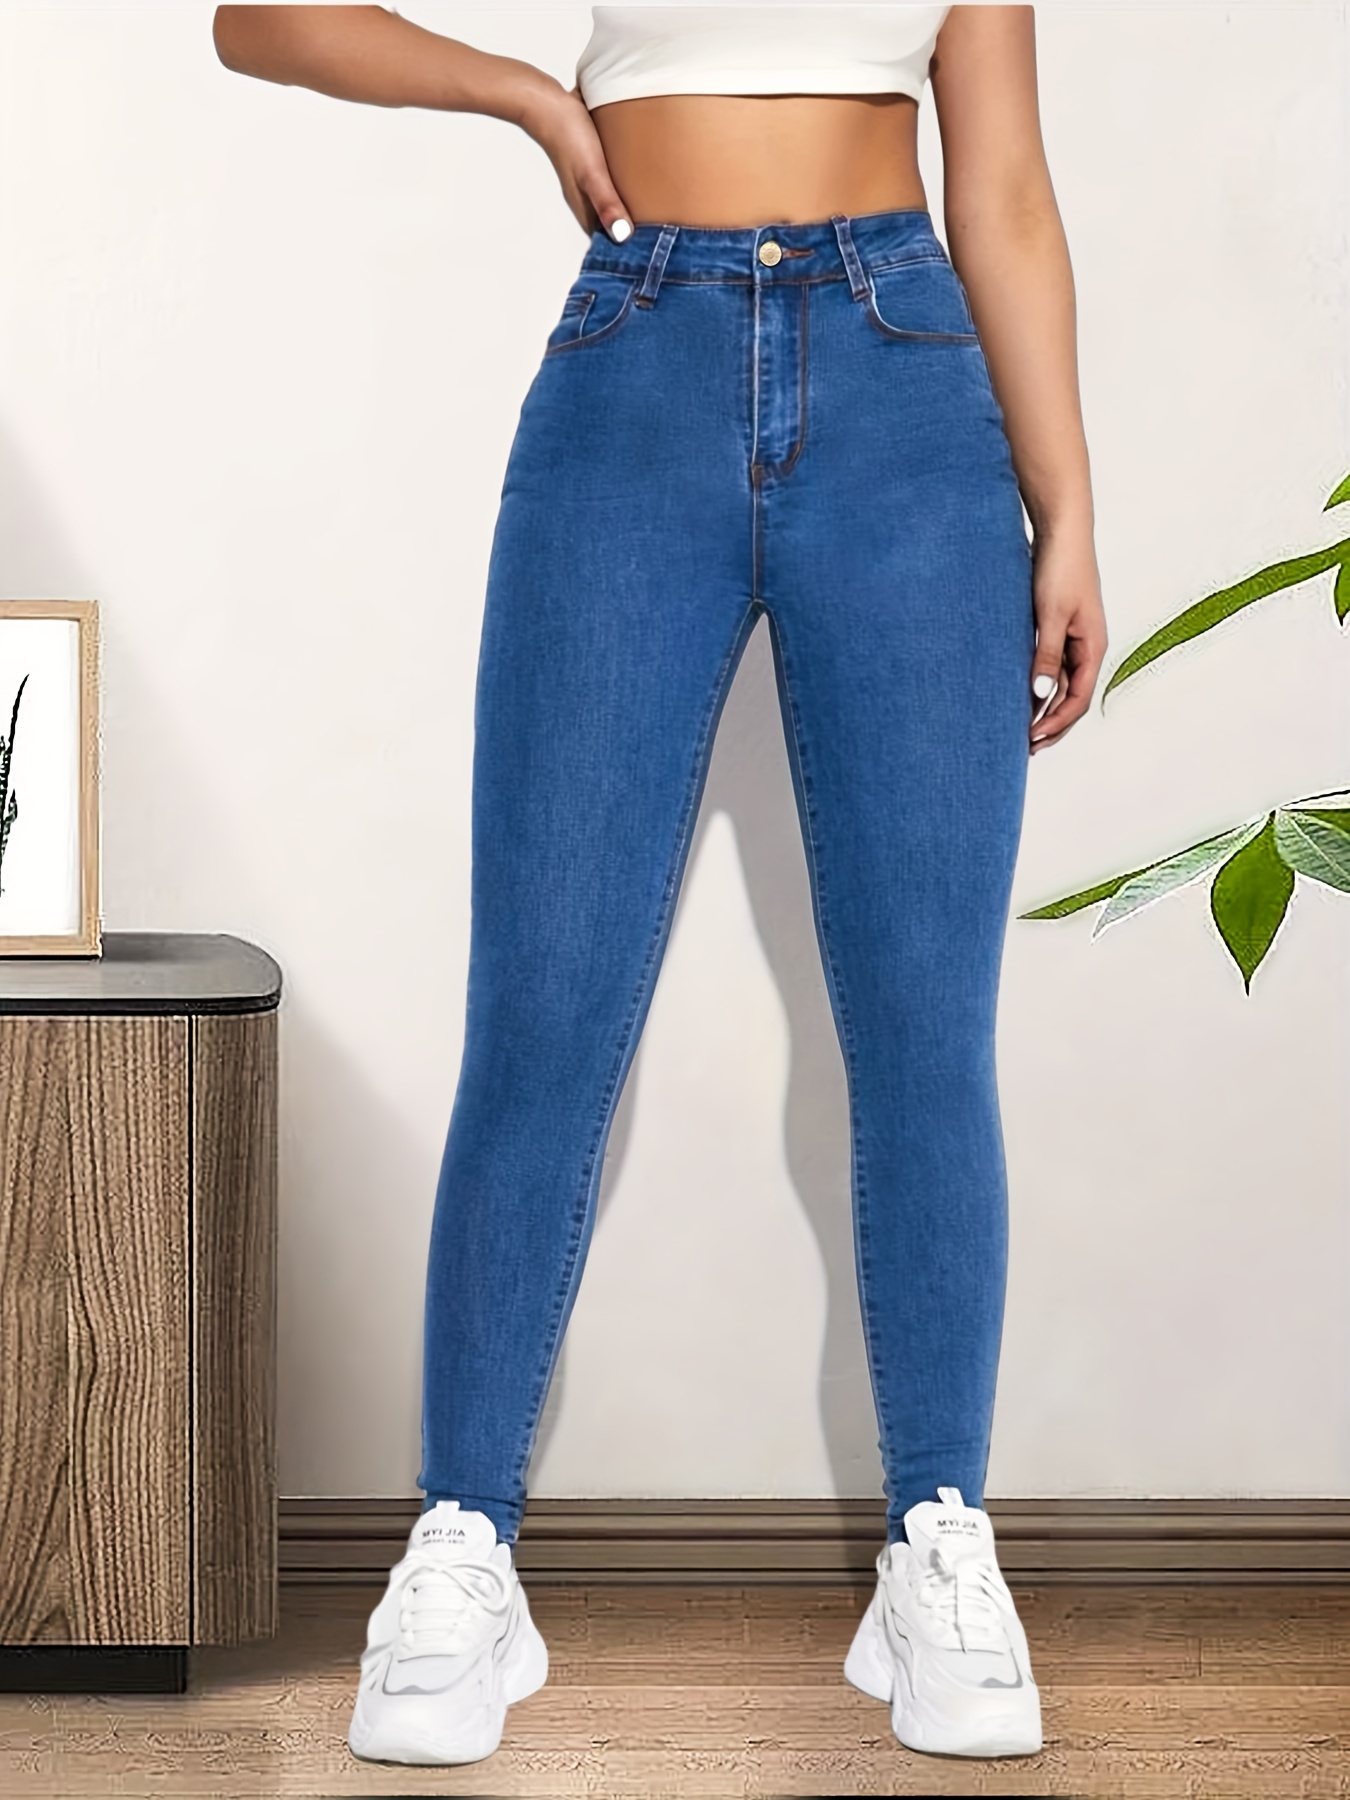 Blue Jeans Ajustados Ajustados, Pantalones De Mezclilla De Tiro Alto Con  Bolsillos Inclinados Y Estiramiento Alto, Jeans Y Ropa De Mujer